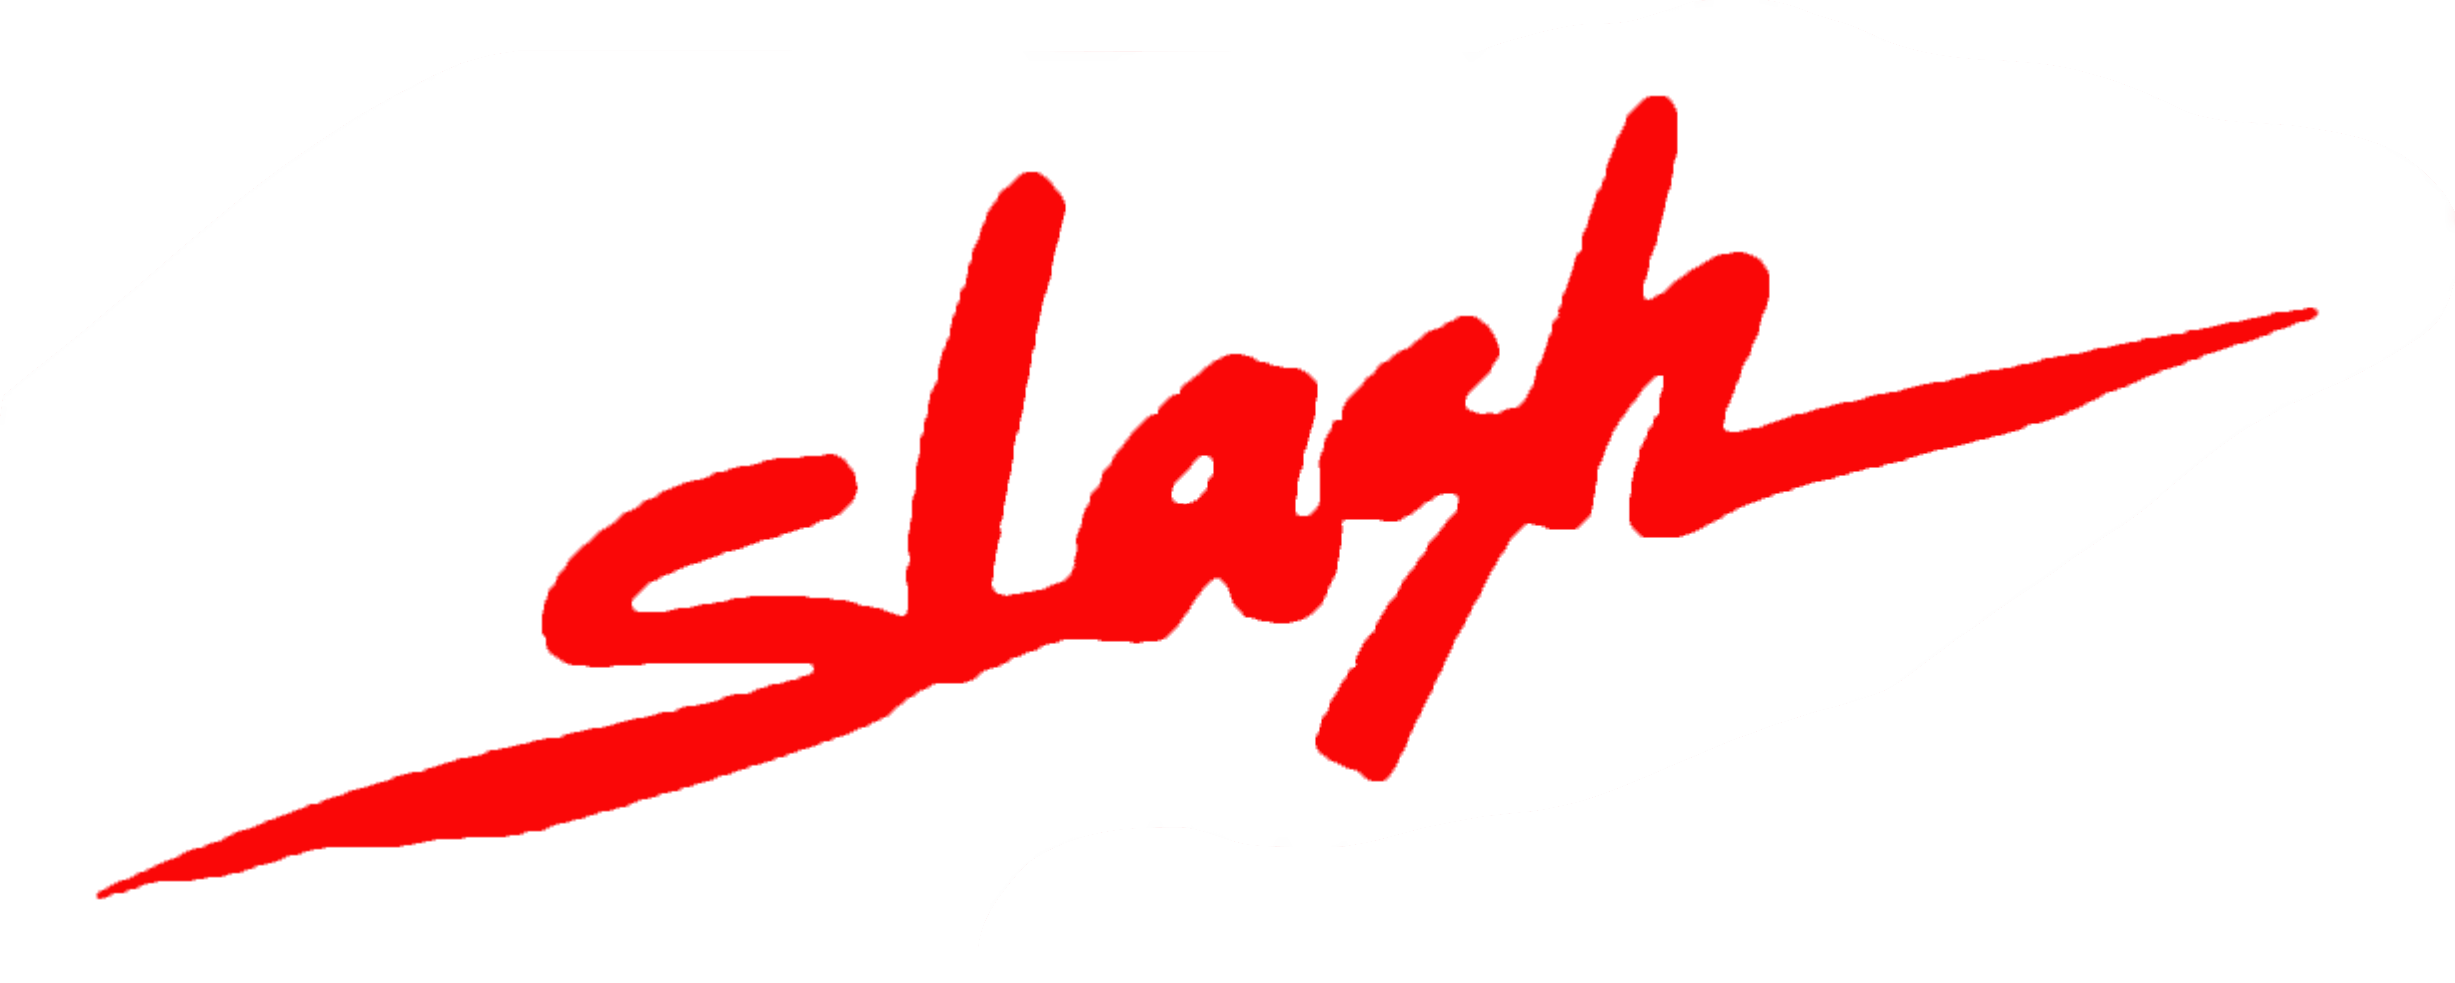 Slash No symbol Sign, slash, angle, trademark, logo png